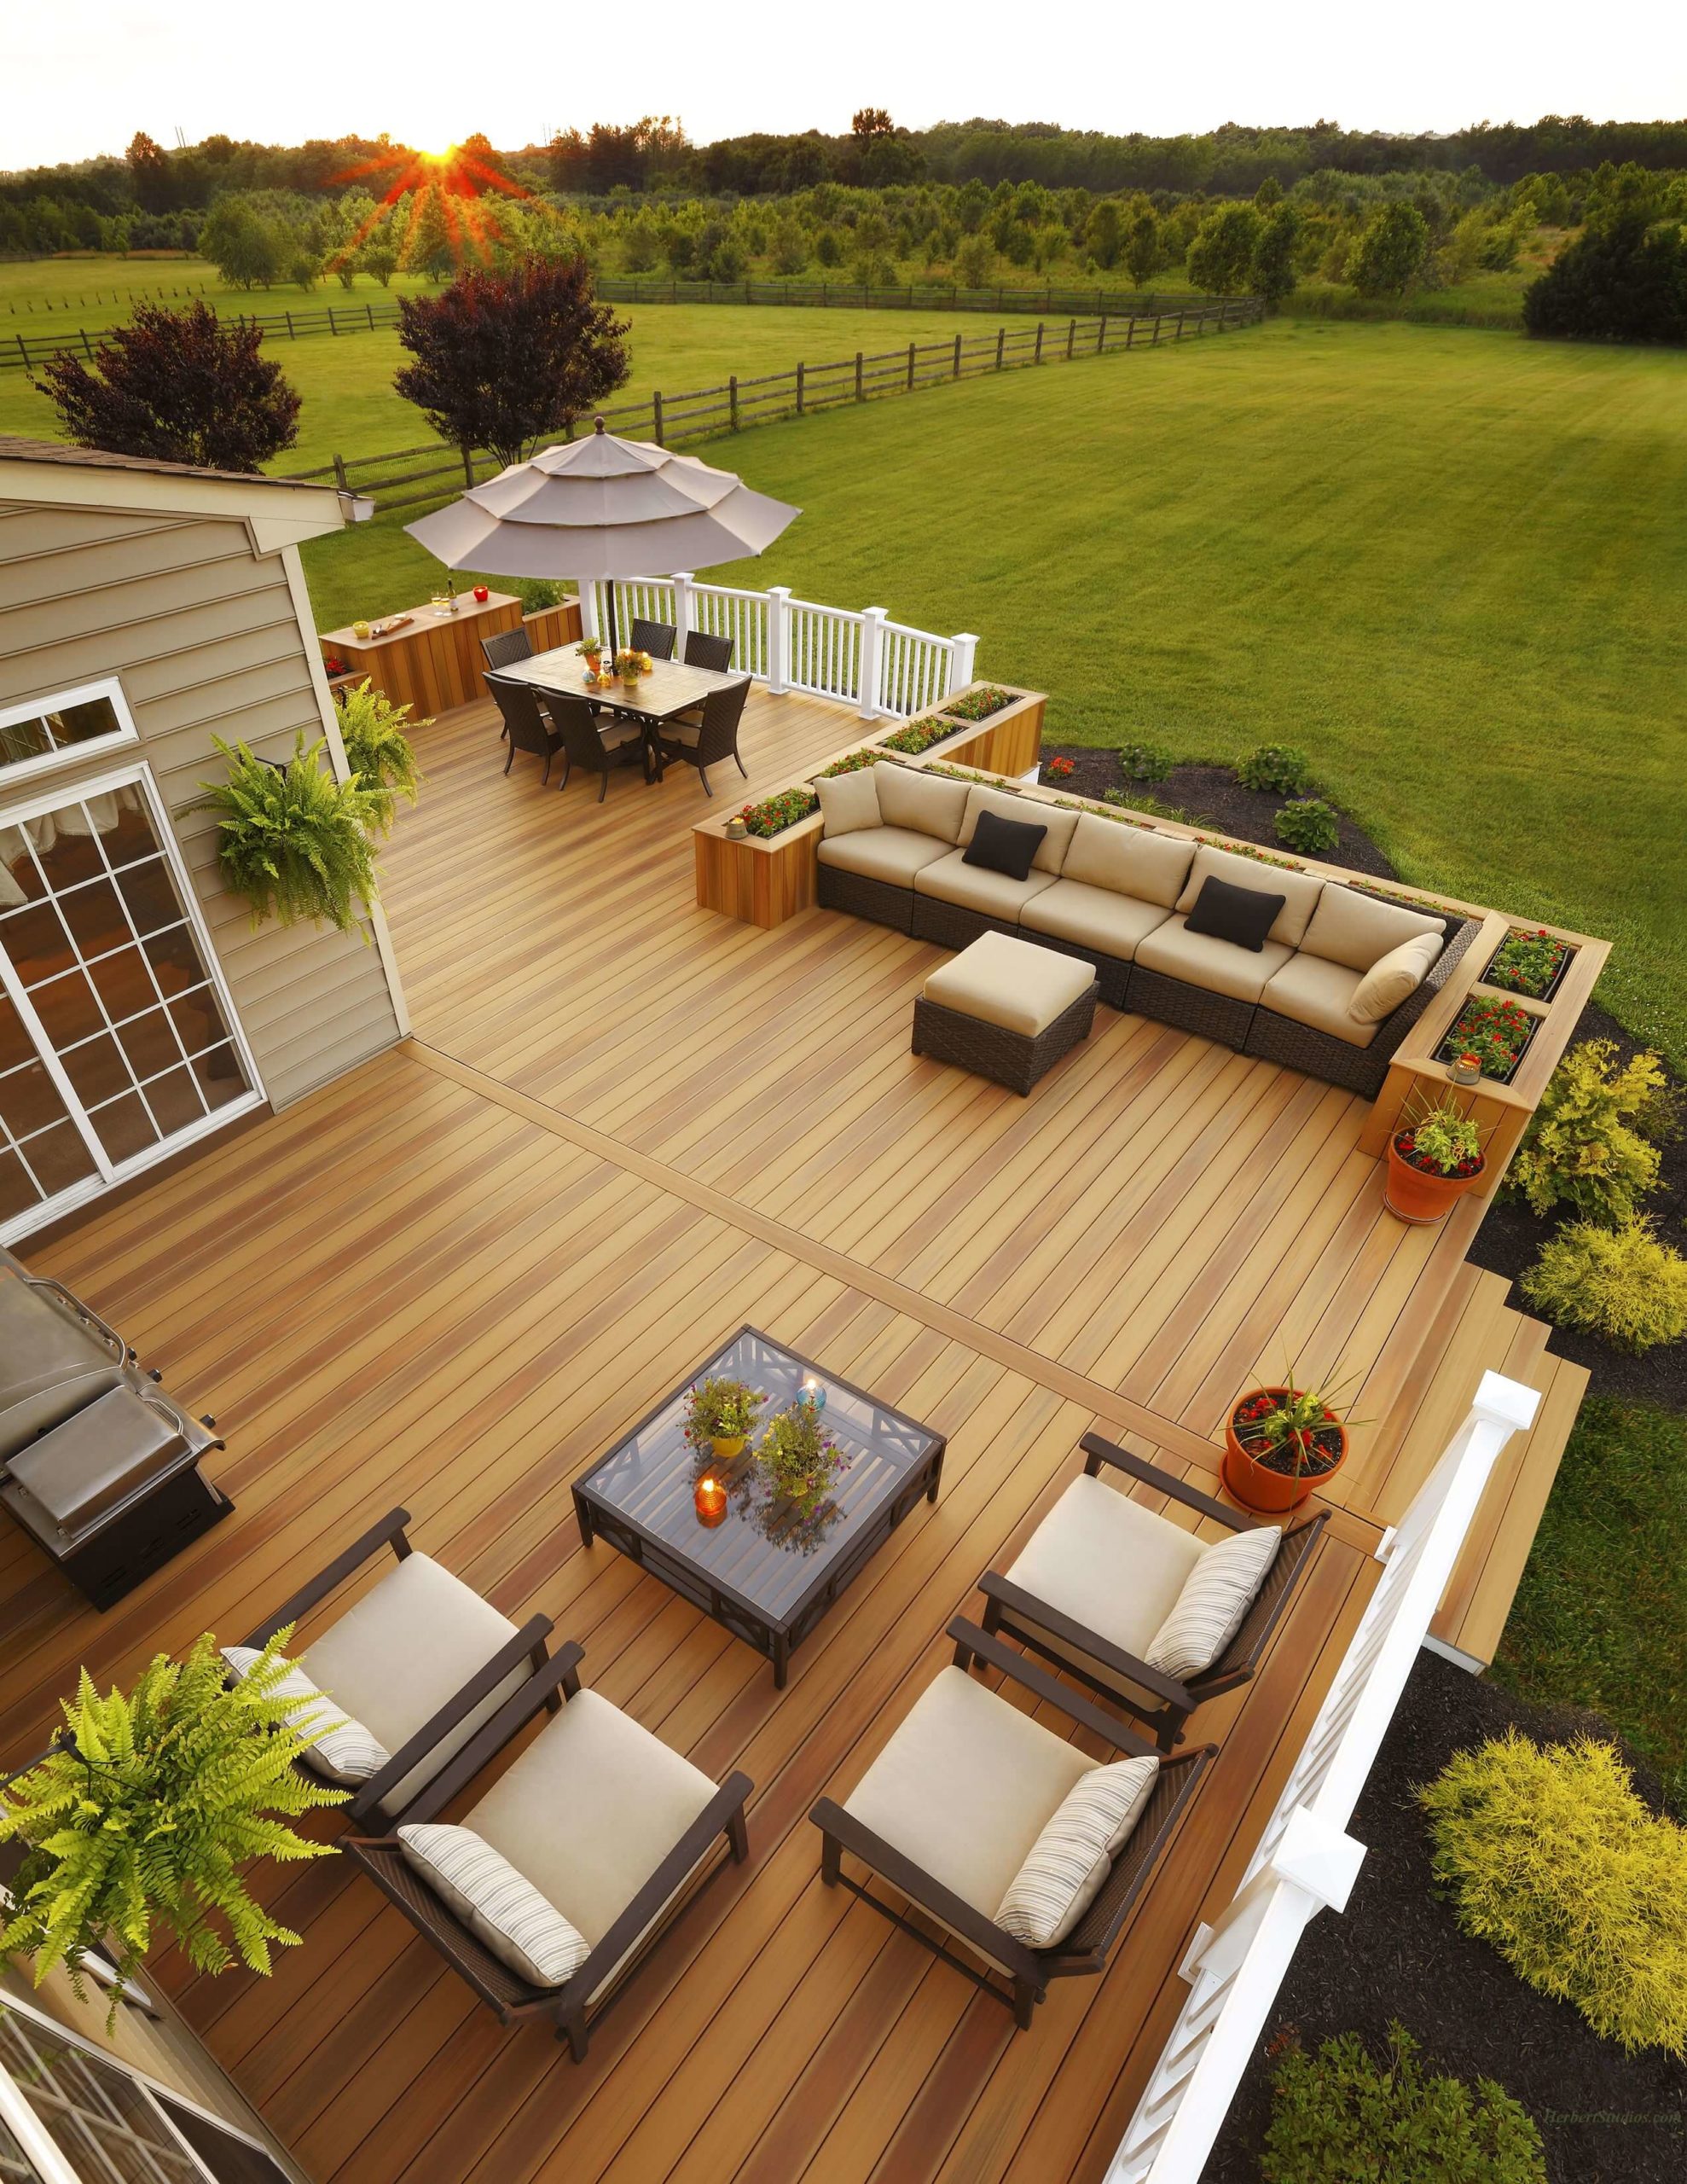 Hardwood Deck Boards - Composite Decking - Barrette Outdoor Living